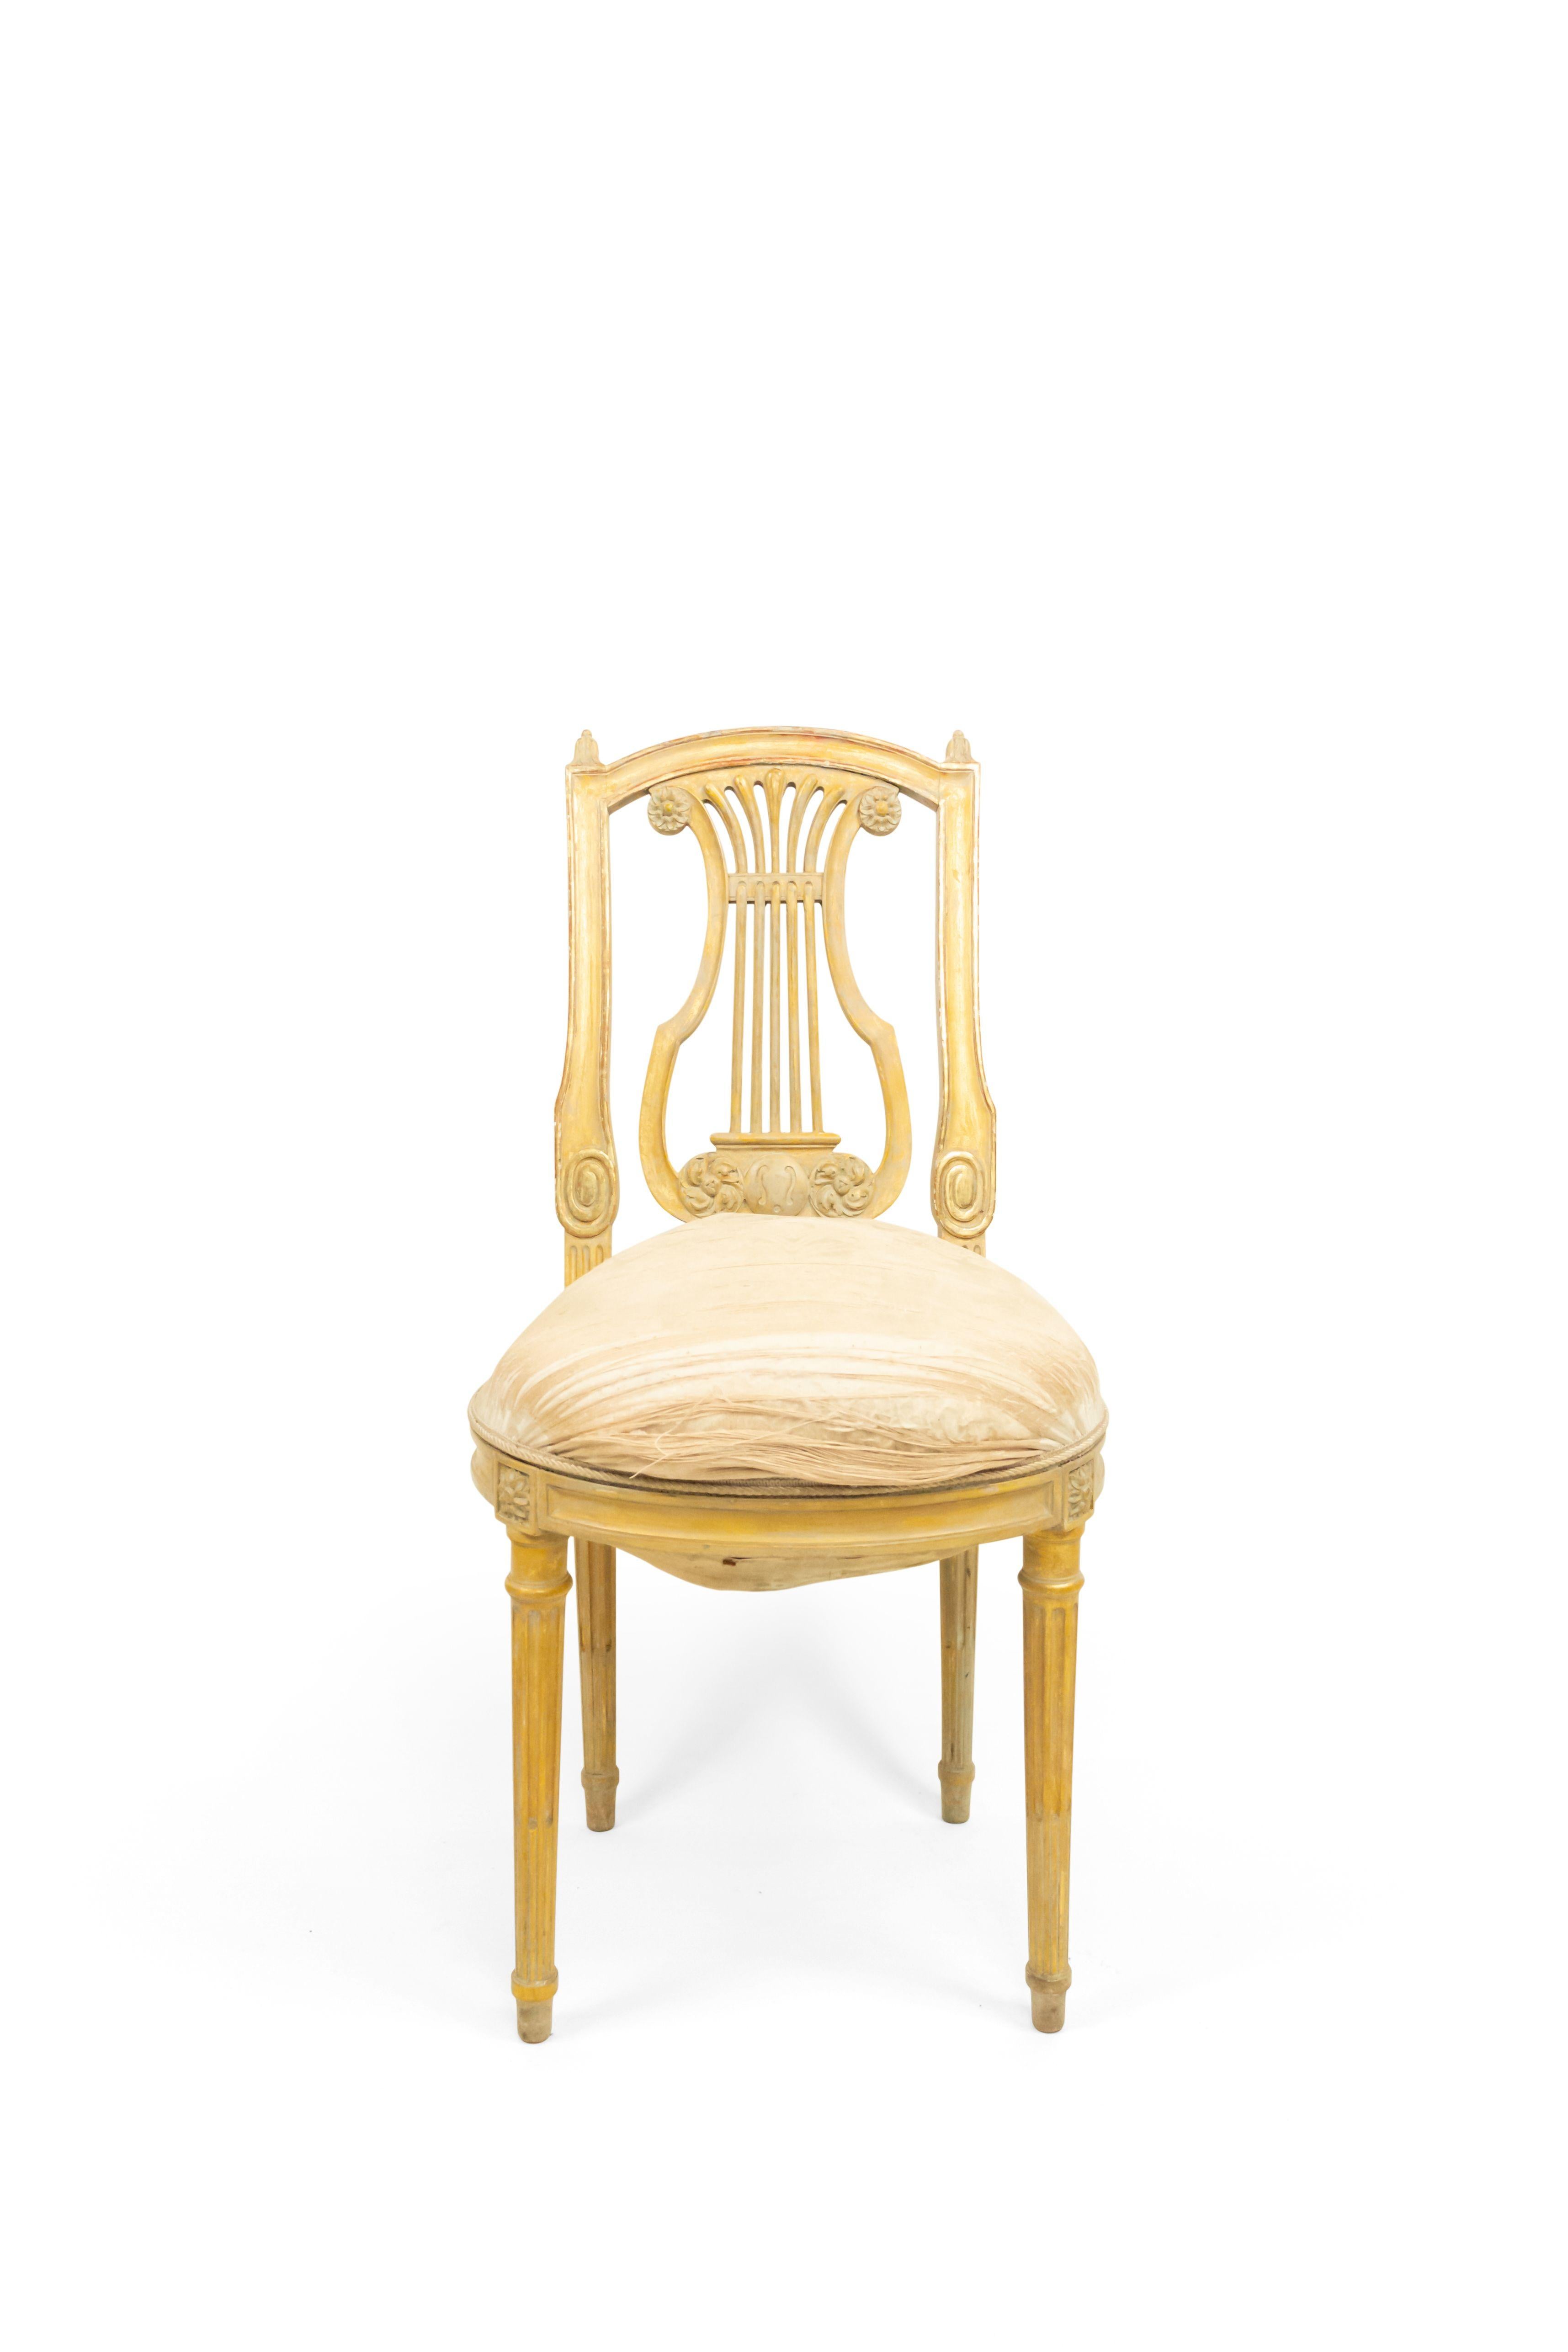 Ensemble de 6 chaises de style Louis XVI (19e siècle) à dossier lyre, blanc et doré, tapissées de damas blanc.